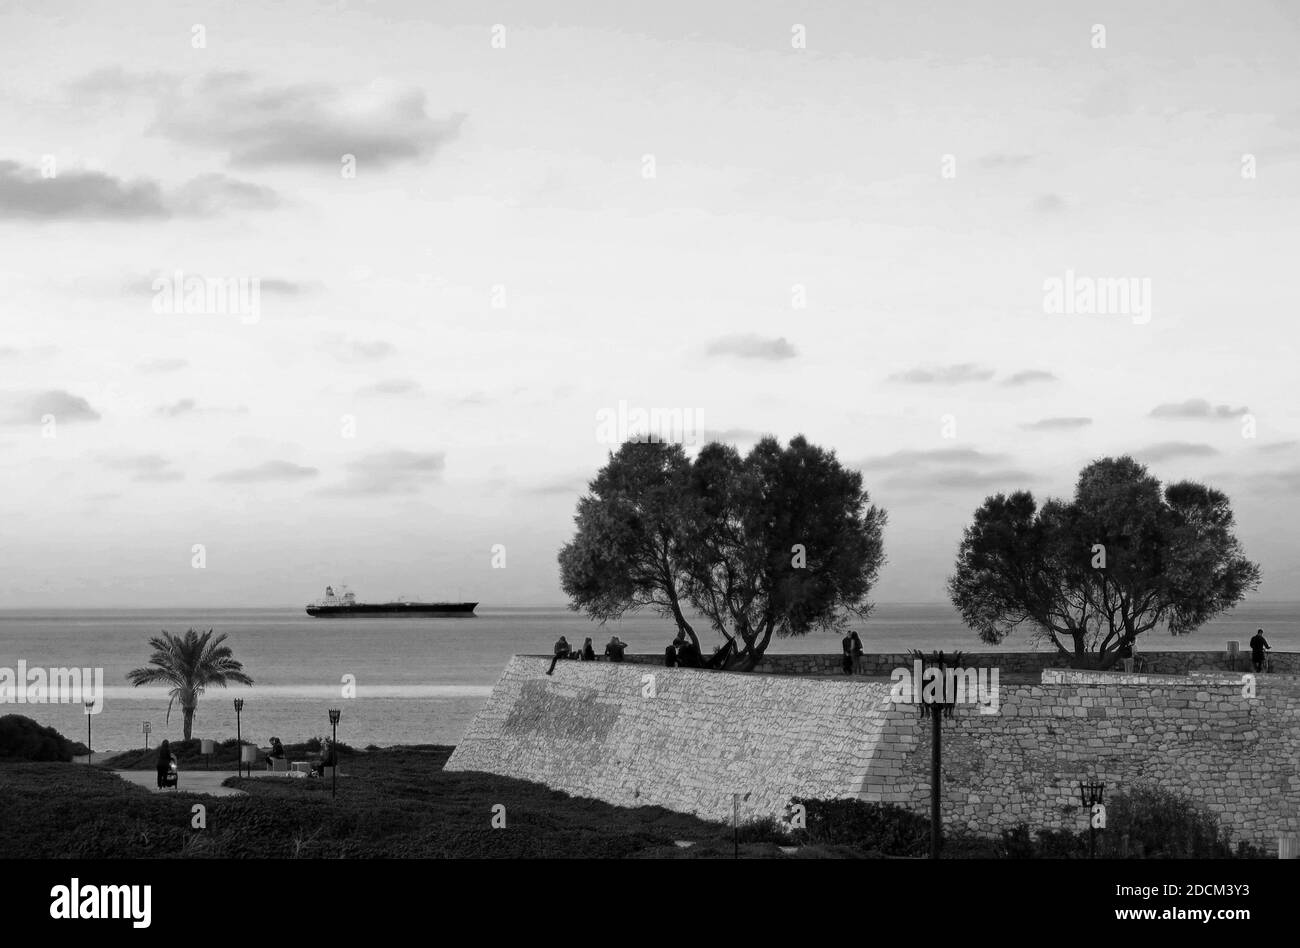 Vista parziale del bastione di Sant'Andrea, parte delle fortificazioni di Heraklion, Creta, durante le ore di distanza sociale per la pandemia di Covid-19. Foto Stock